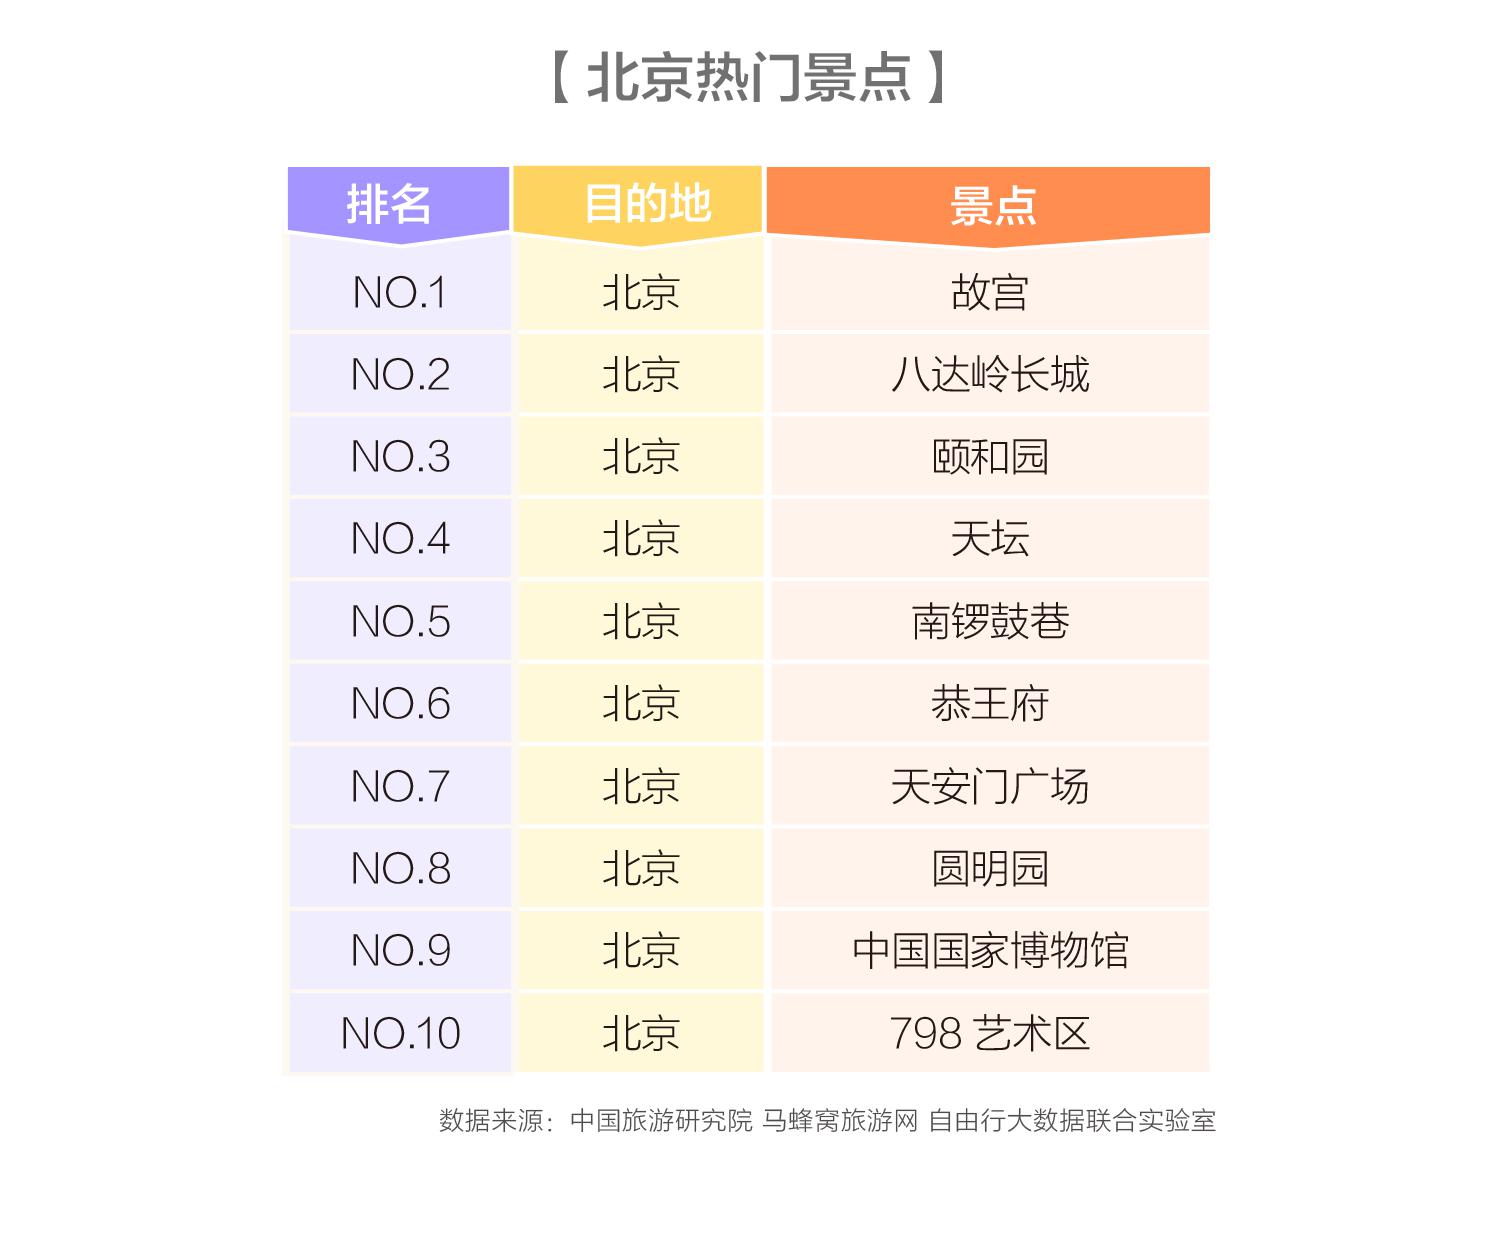 马蜂窝中国旅游研究院：2018年华北旅游报告 北京热度涨幅达到191%